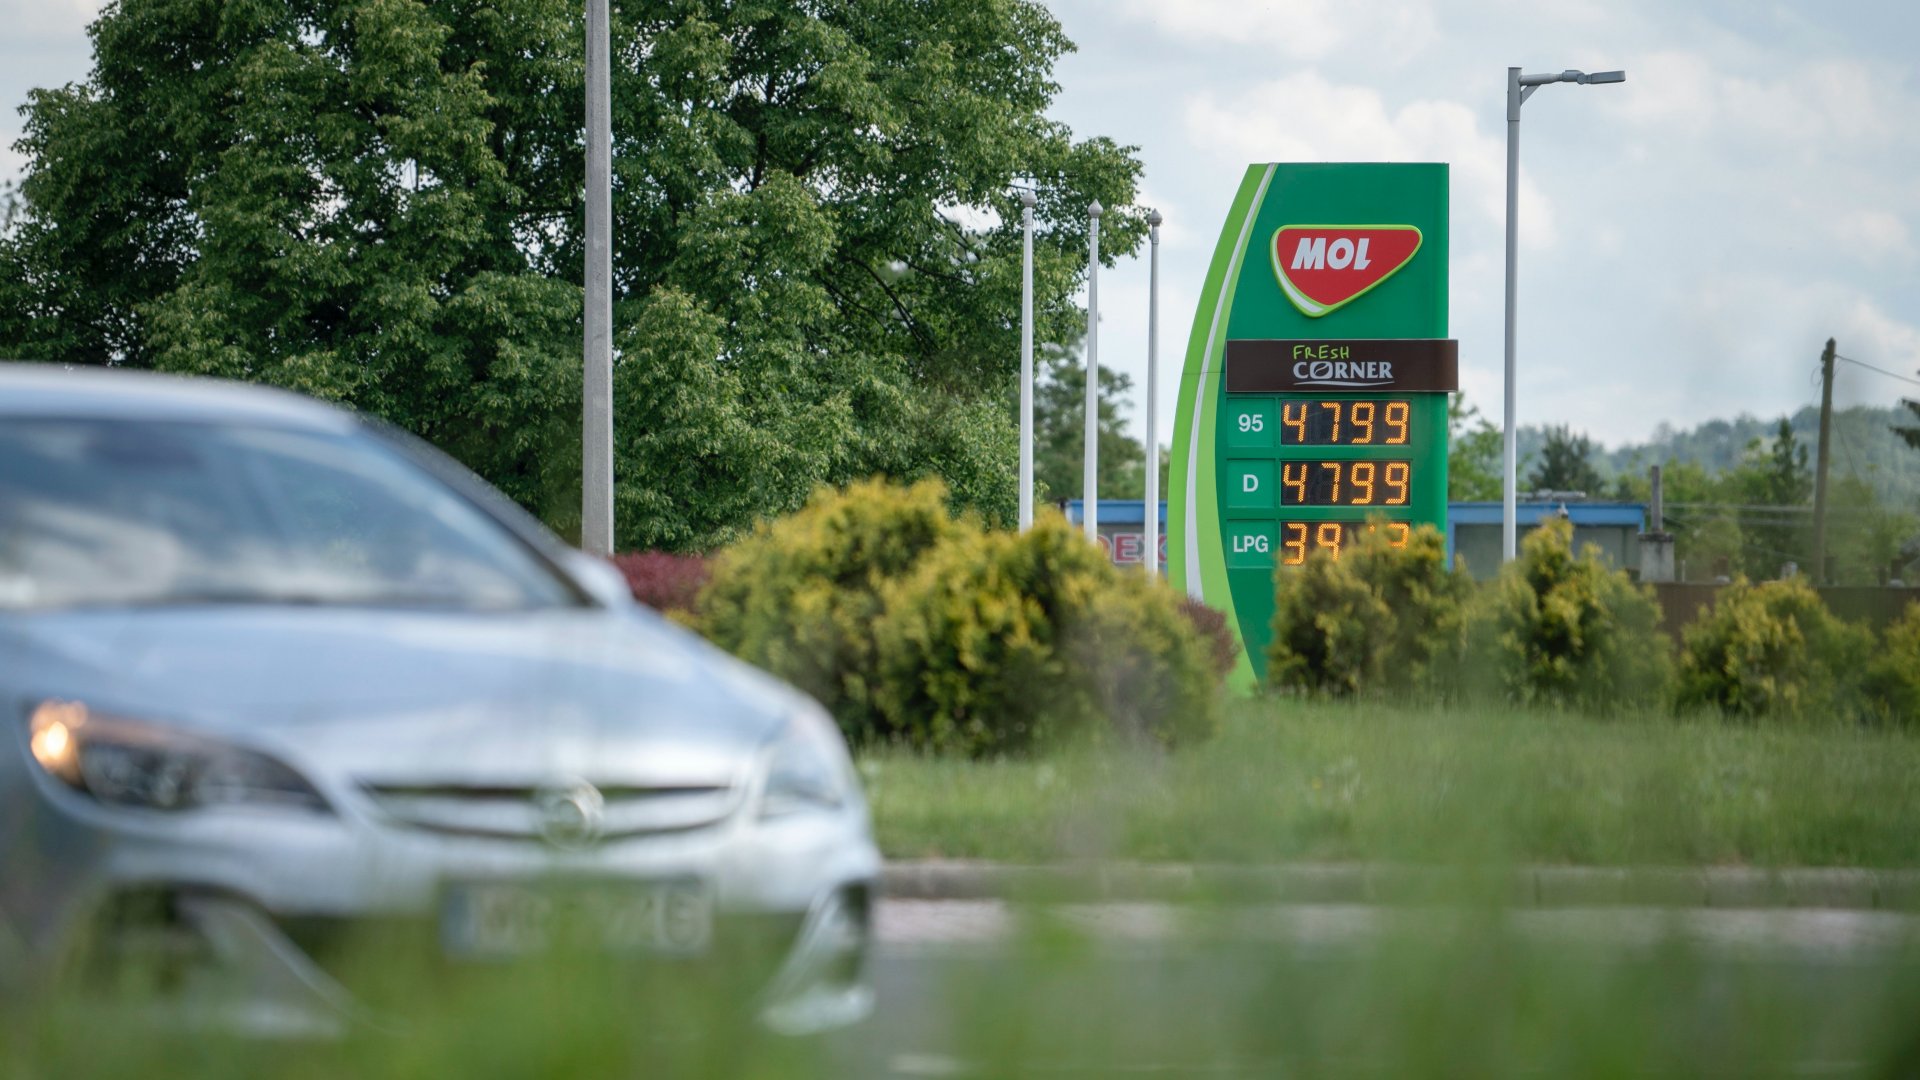 Hatósági üzemanyagárak a Mol benzinkútján Salgótarjánban 2022. május 27-én